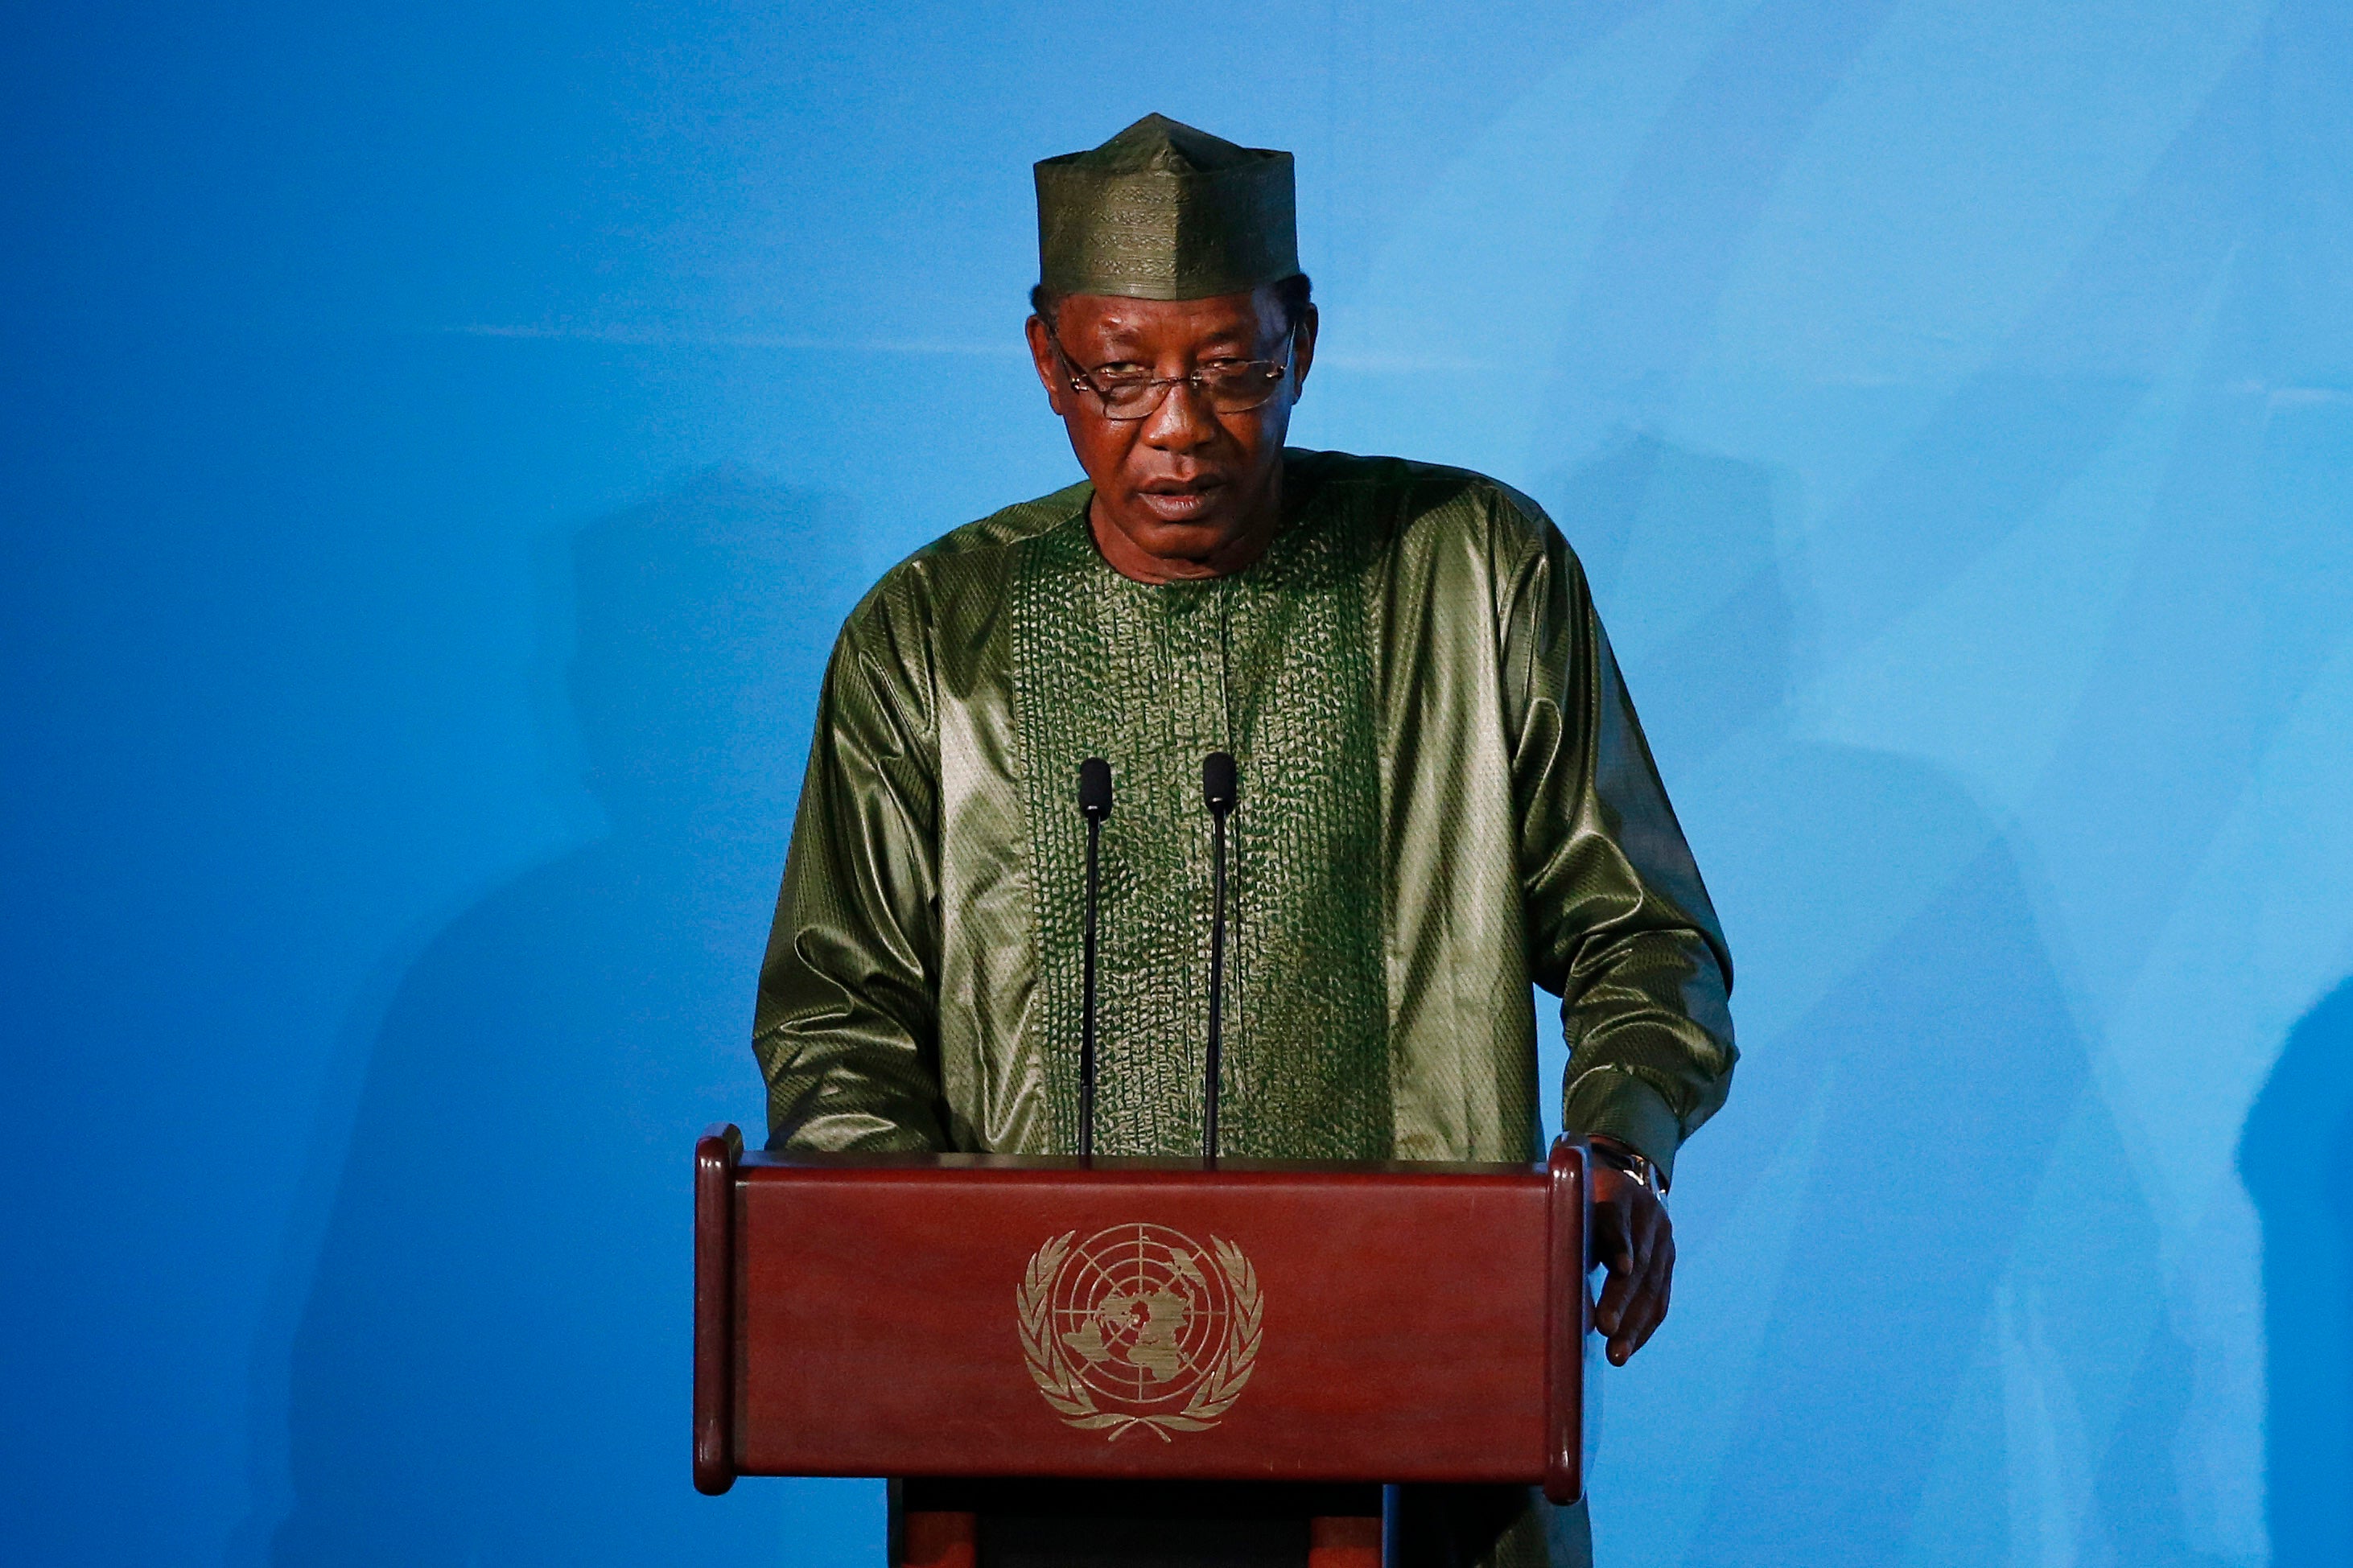 Le président tchadien Idriss Déby Itno récemment décédé, photographié ici lors de son discours au Sommet Action Climat à l’Assemblée générale des Nations Unies, au siège de l’ONU le 23 septembre 2019.